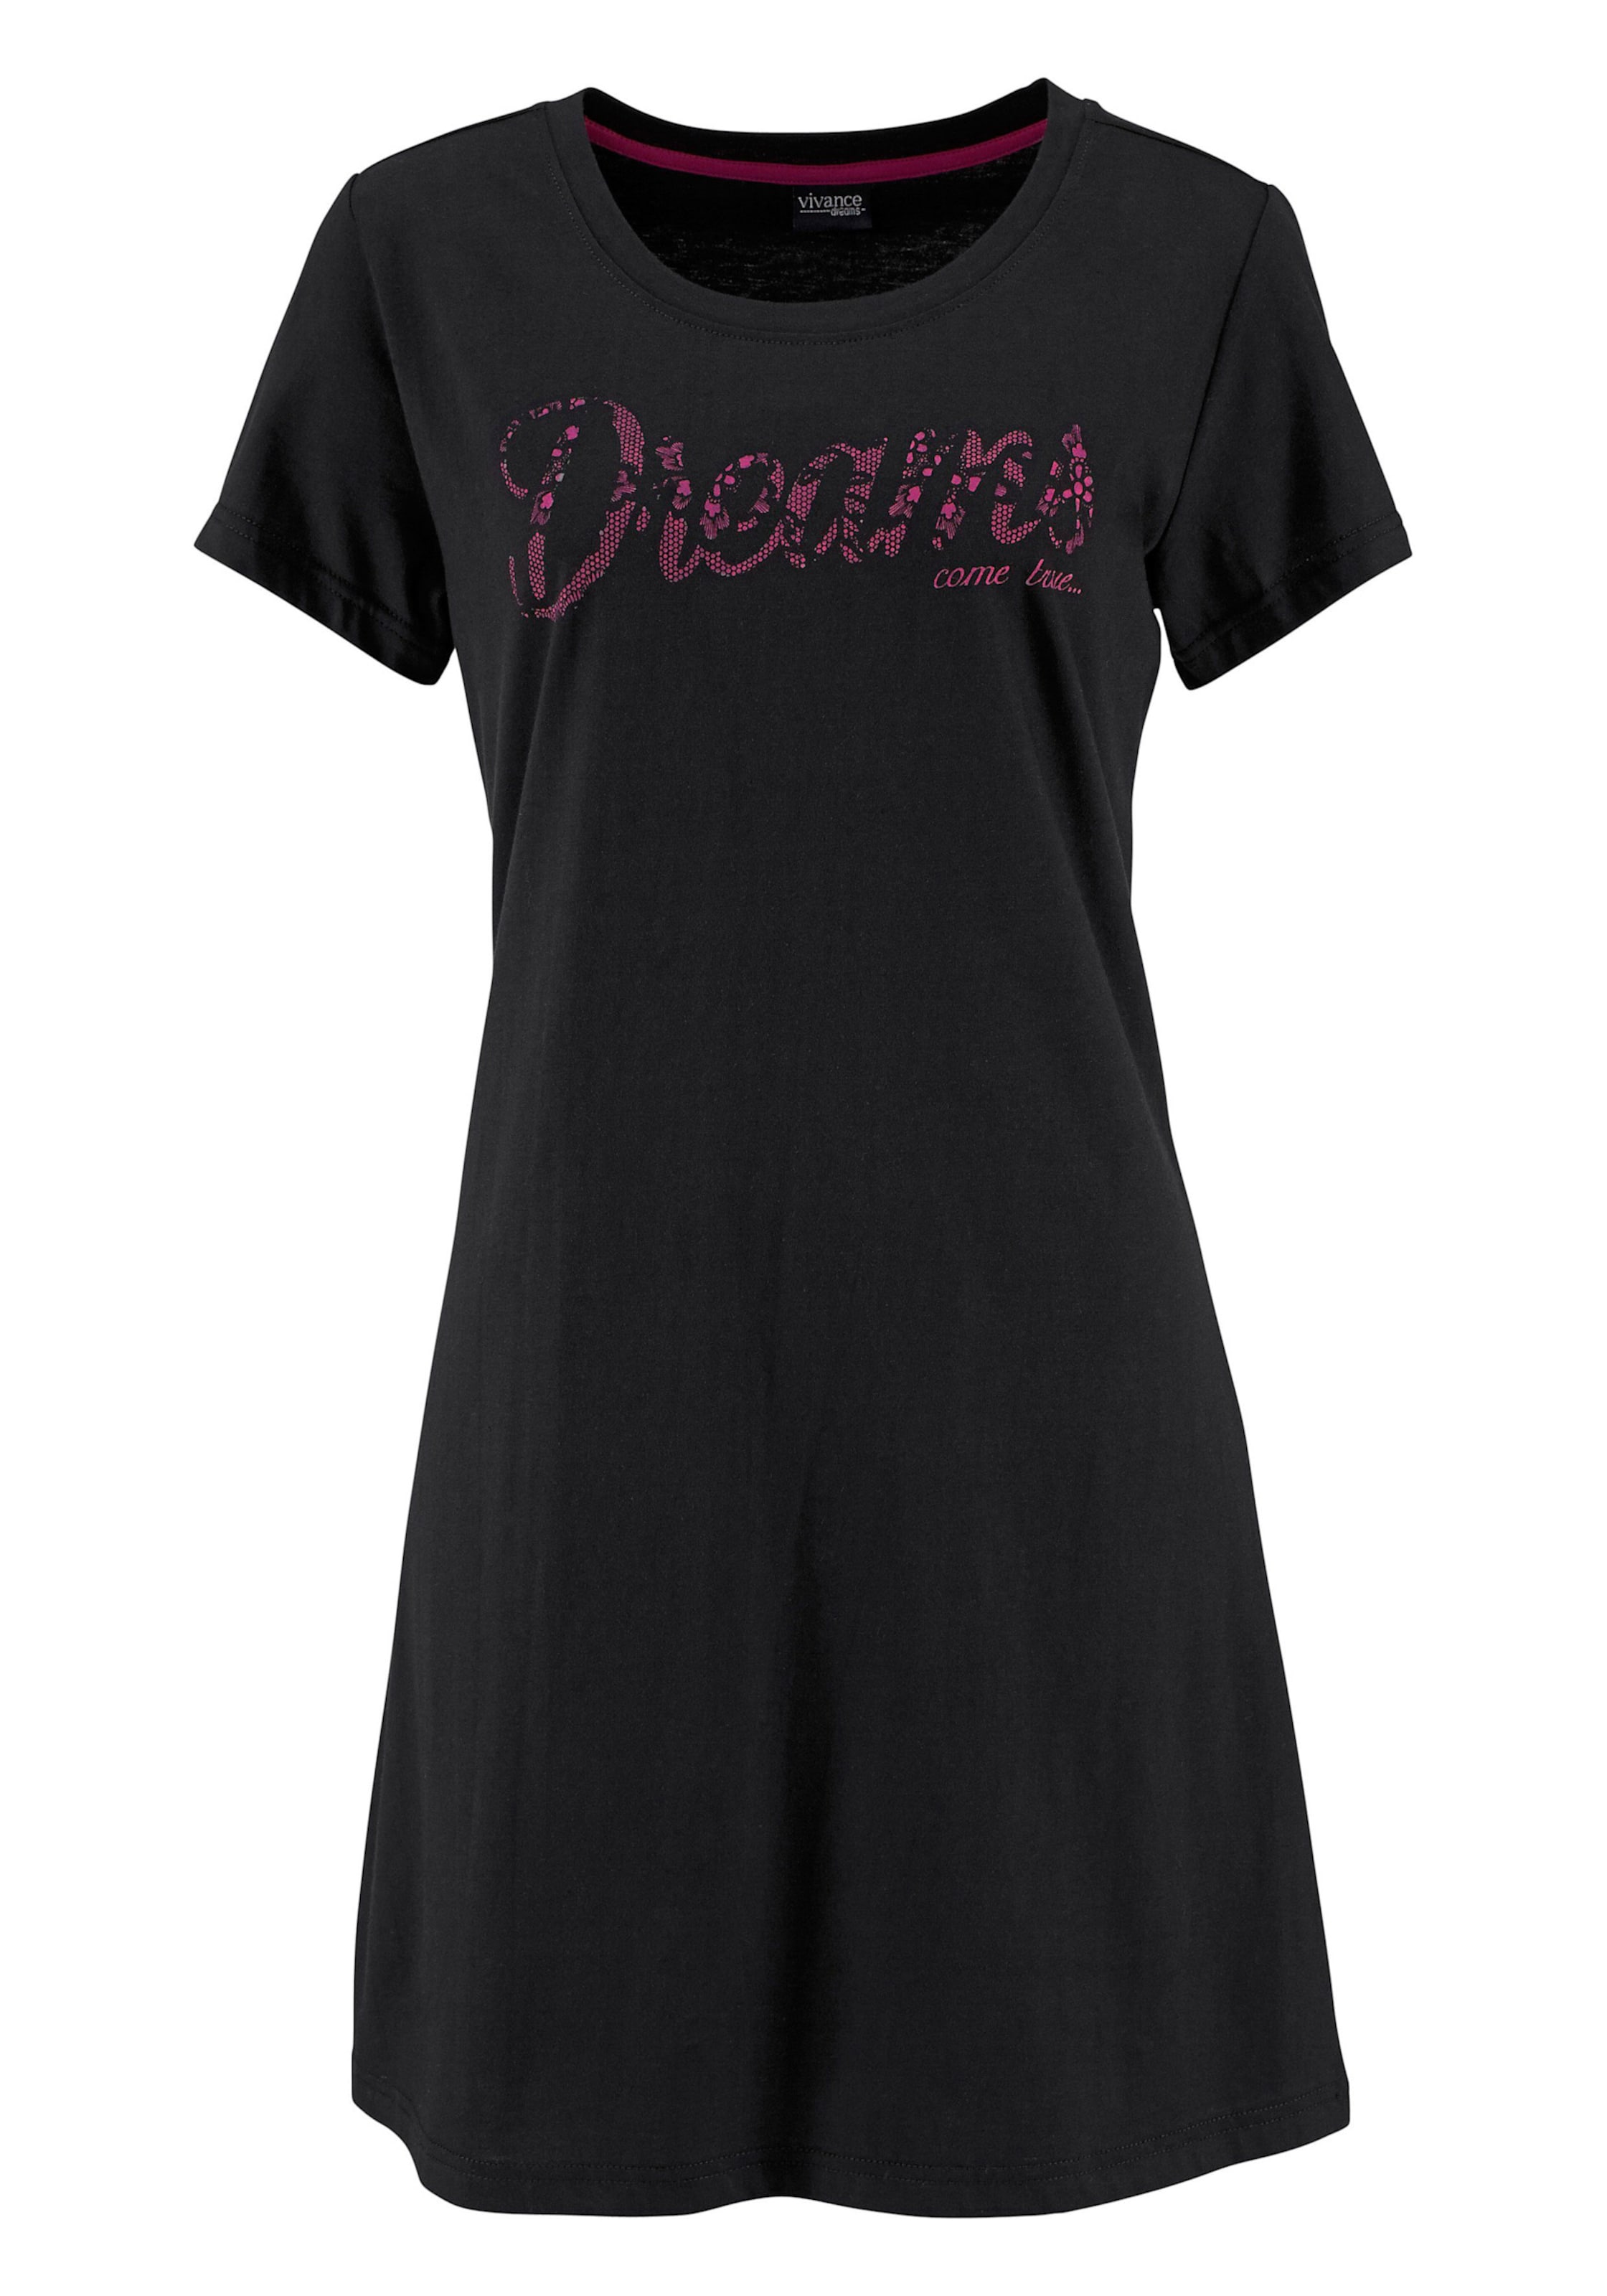 Spitzen Shirt günstig Kaufen-Sleepshirt in pink, schwarz von Vivance Dreams. Sleepshirt in pink, schwarz von Vivance Dreams <![CDATA[Modischer Kurz-Style mit Rundhalsausschnitt, kurzen Ärmeln und Frontdruck in Spitzen-Optik. Single-Jersey aus 100% Baumwolle.]]>. 